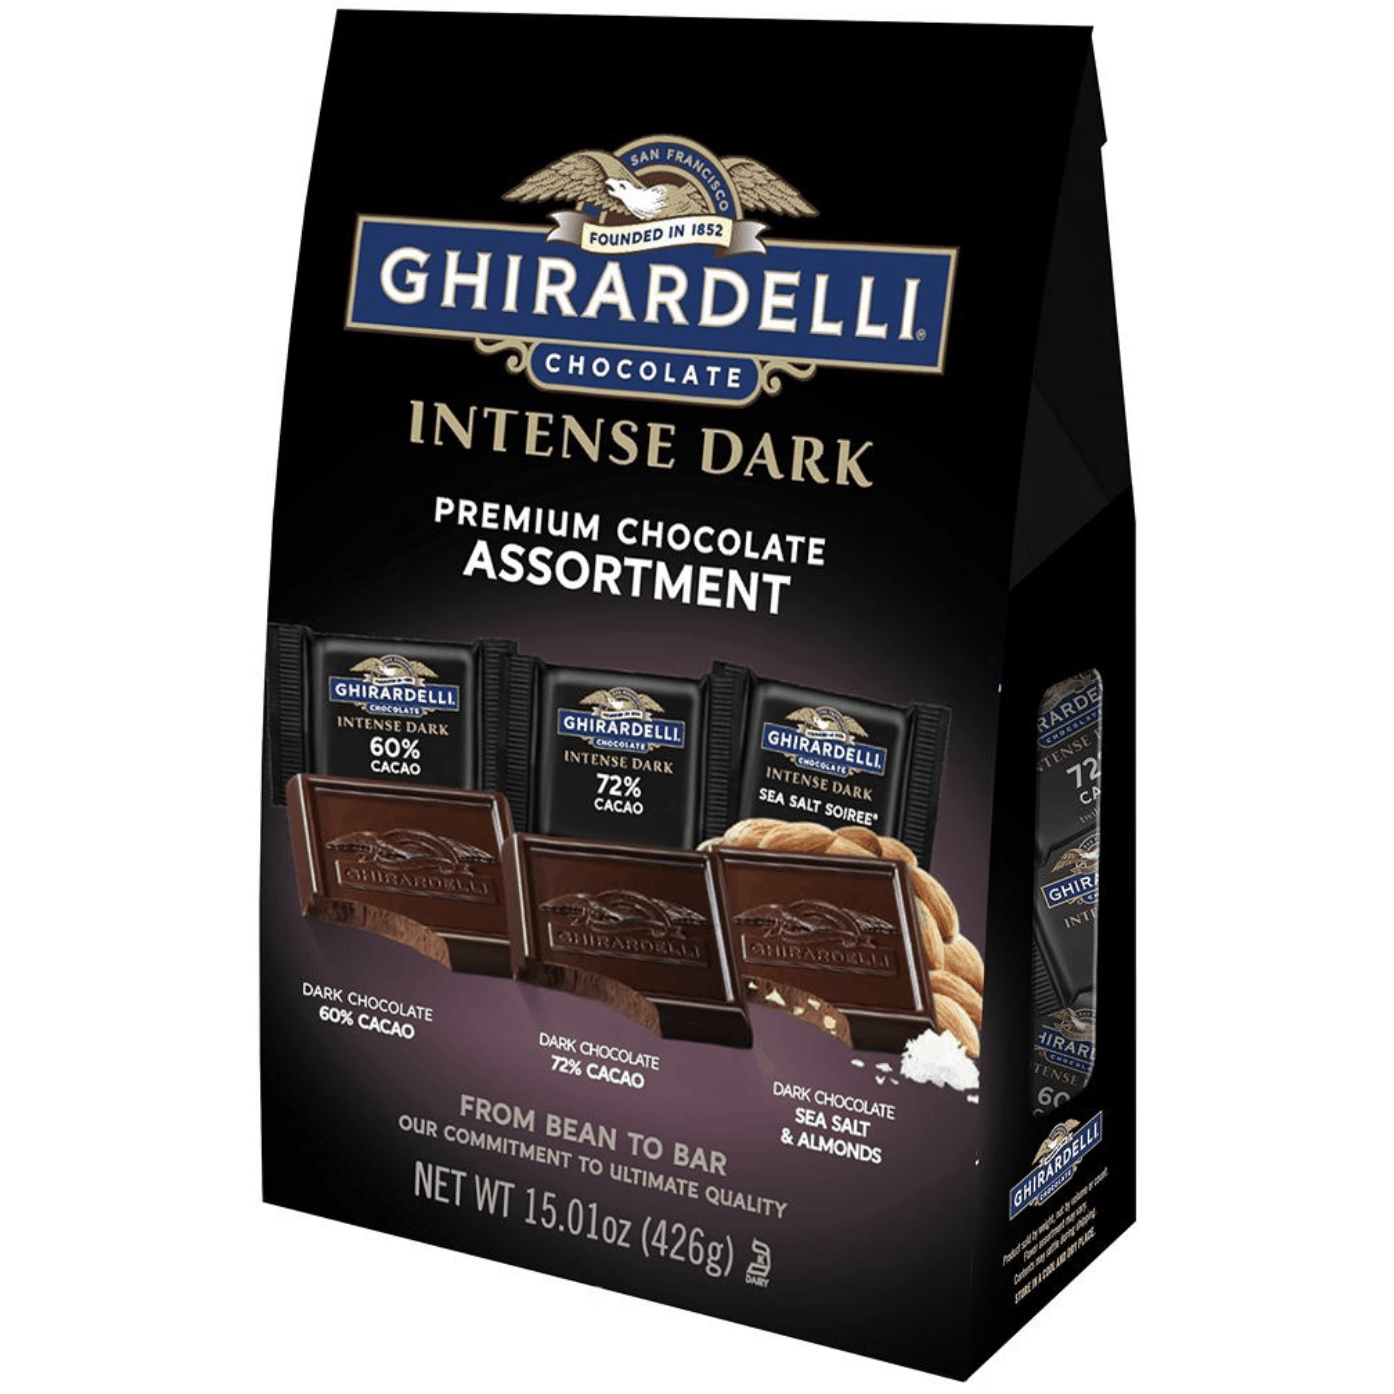 Ghirardelli Intense Dark Chocolate Premium Collection, 15.01 oz.